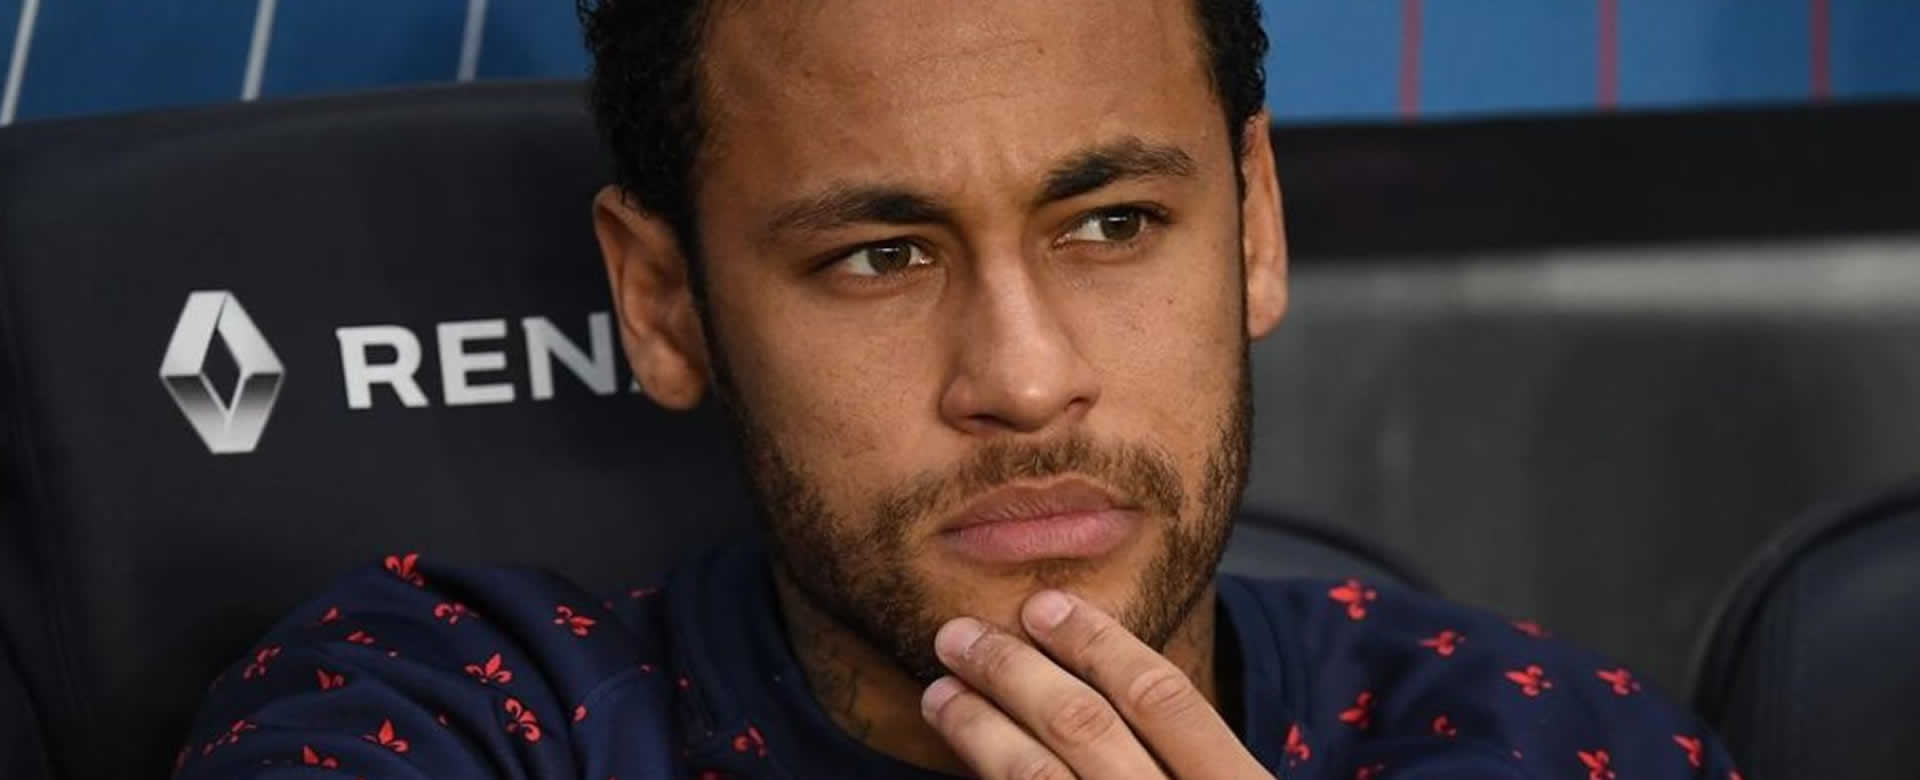 Fiscales descartan acusaciones de violación contra Neymar